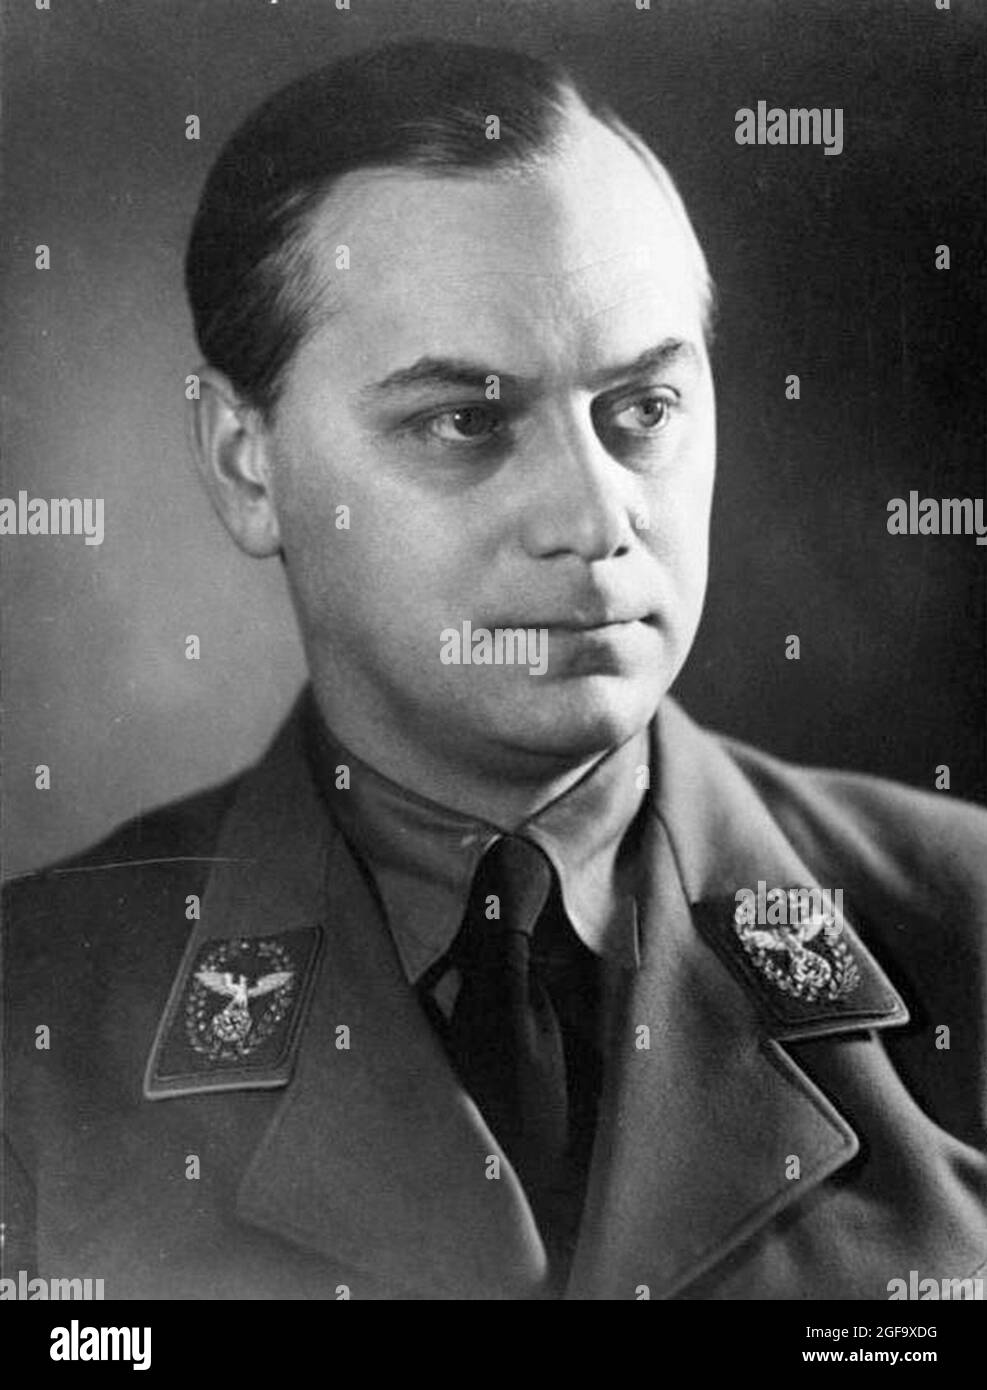 Il leader nazista e politico Alfred Rosenberg, che era capo del Ministero del Reich per i territori orientali occupati. Fu catturato nel 1945, processato e impiccato a Norimberga nel 1946. Credit: Bundesarchiv tedesco Foto Stock